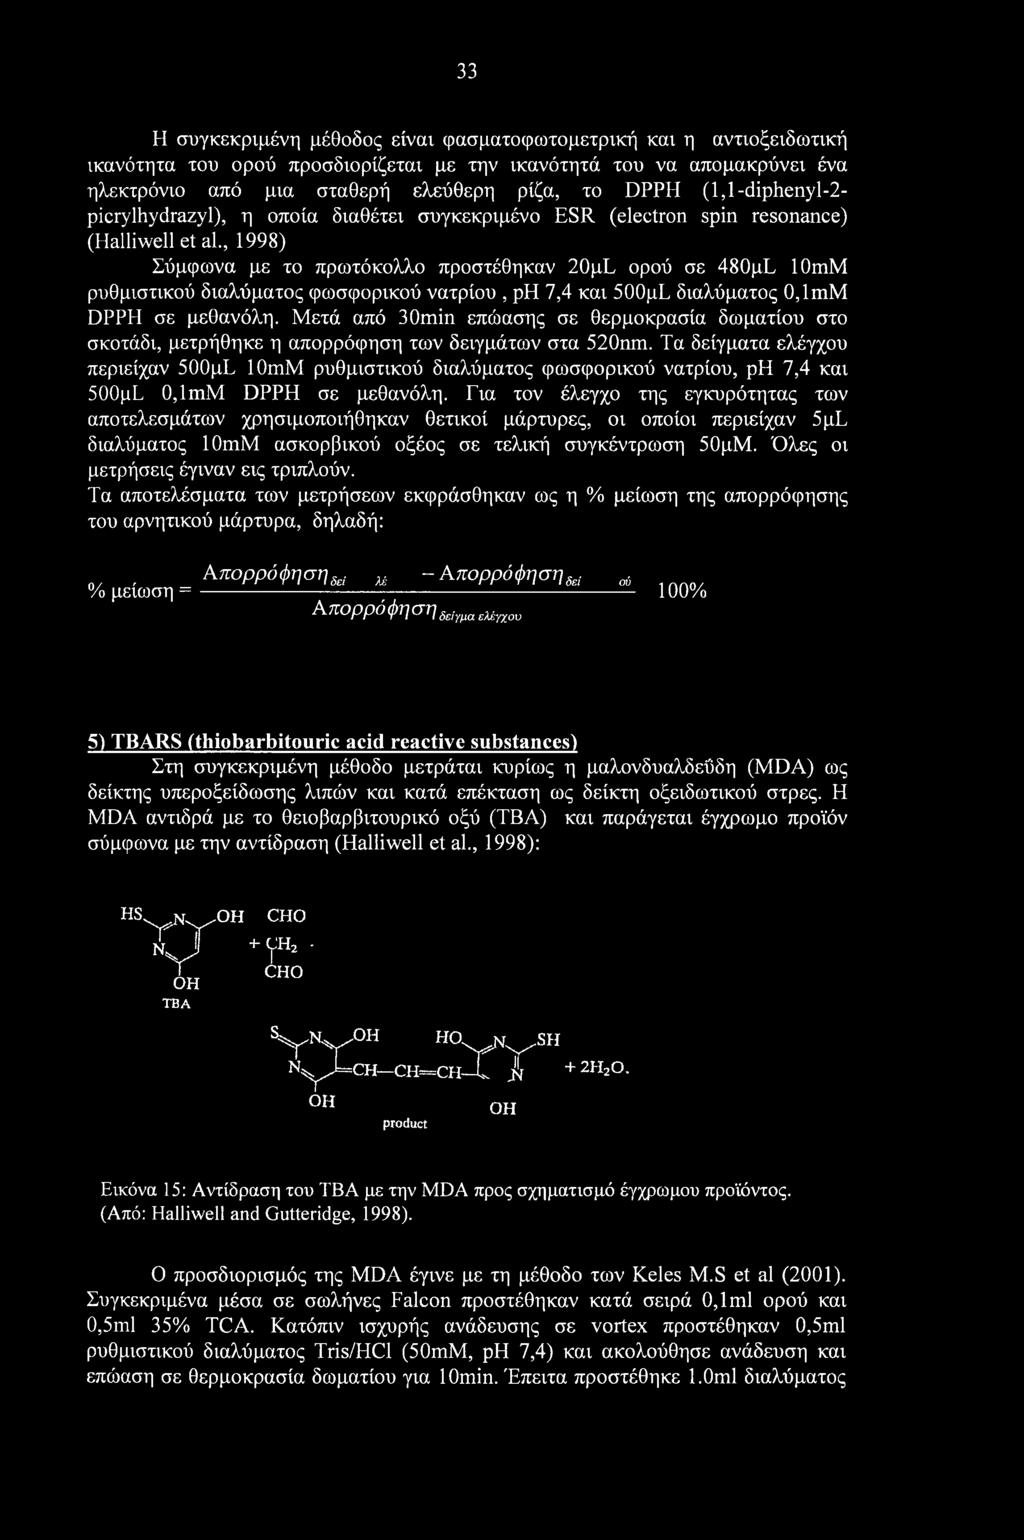 , 1998) Σύμφωνα με το πρωτόκολλο προστέθηκαν 20pL ορού σε 480pL 10mM ρυθμιστικού διαλύματος φωσφορικού νατρίου, ph 7,4 και 500μΕ διαλύματος 0,lmM DPPH σε μεθανόλη.